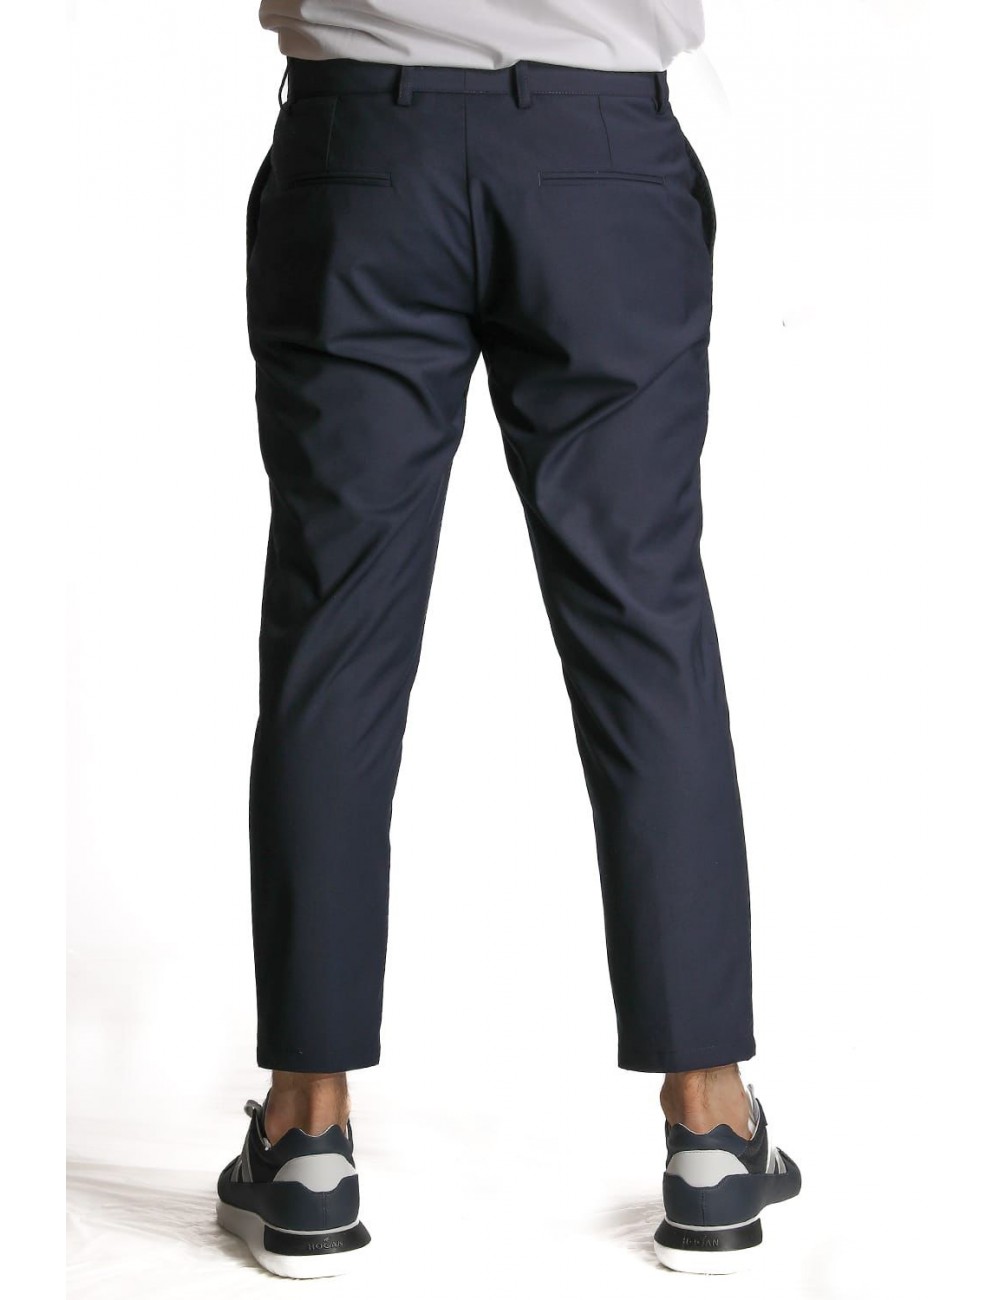 pantalone marsem UOMO BLU - P002 - T109 vista frontale indossato